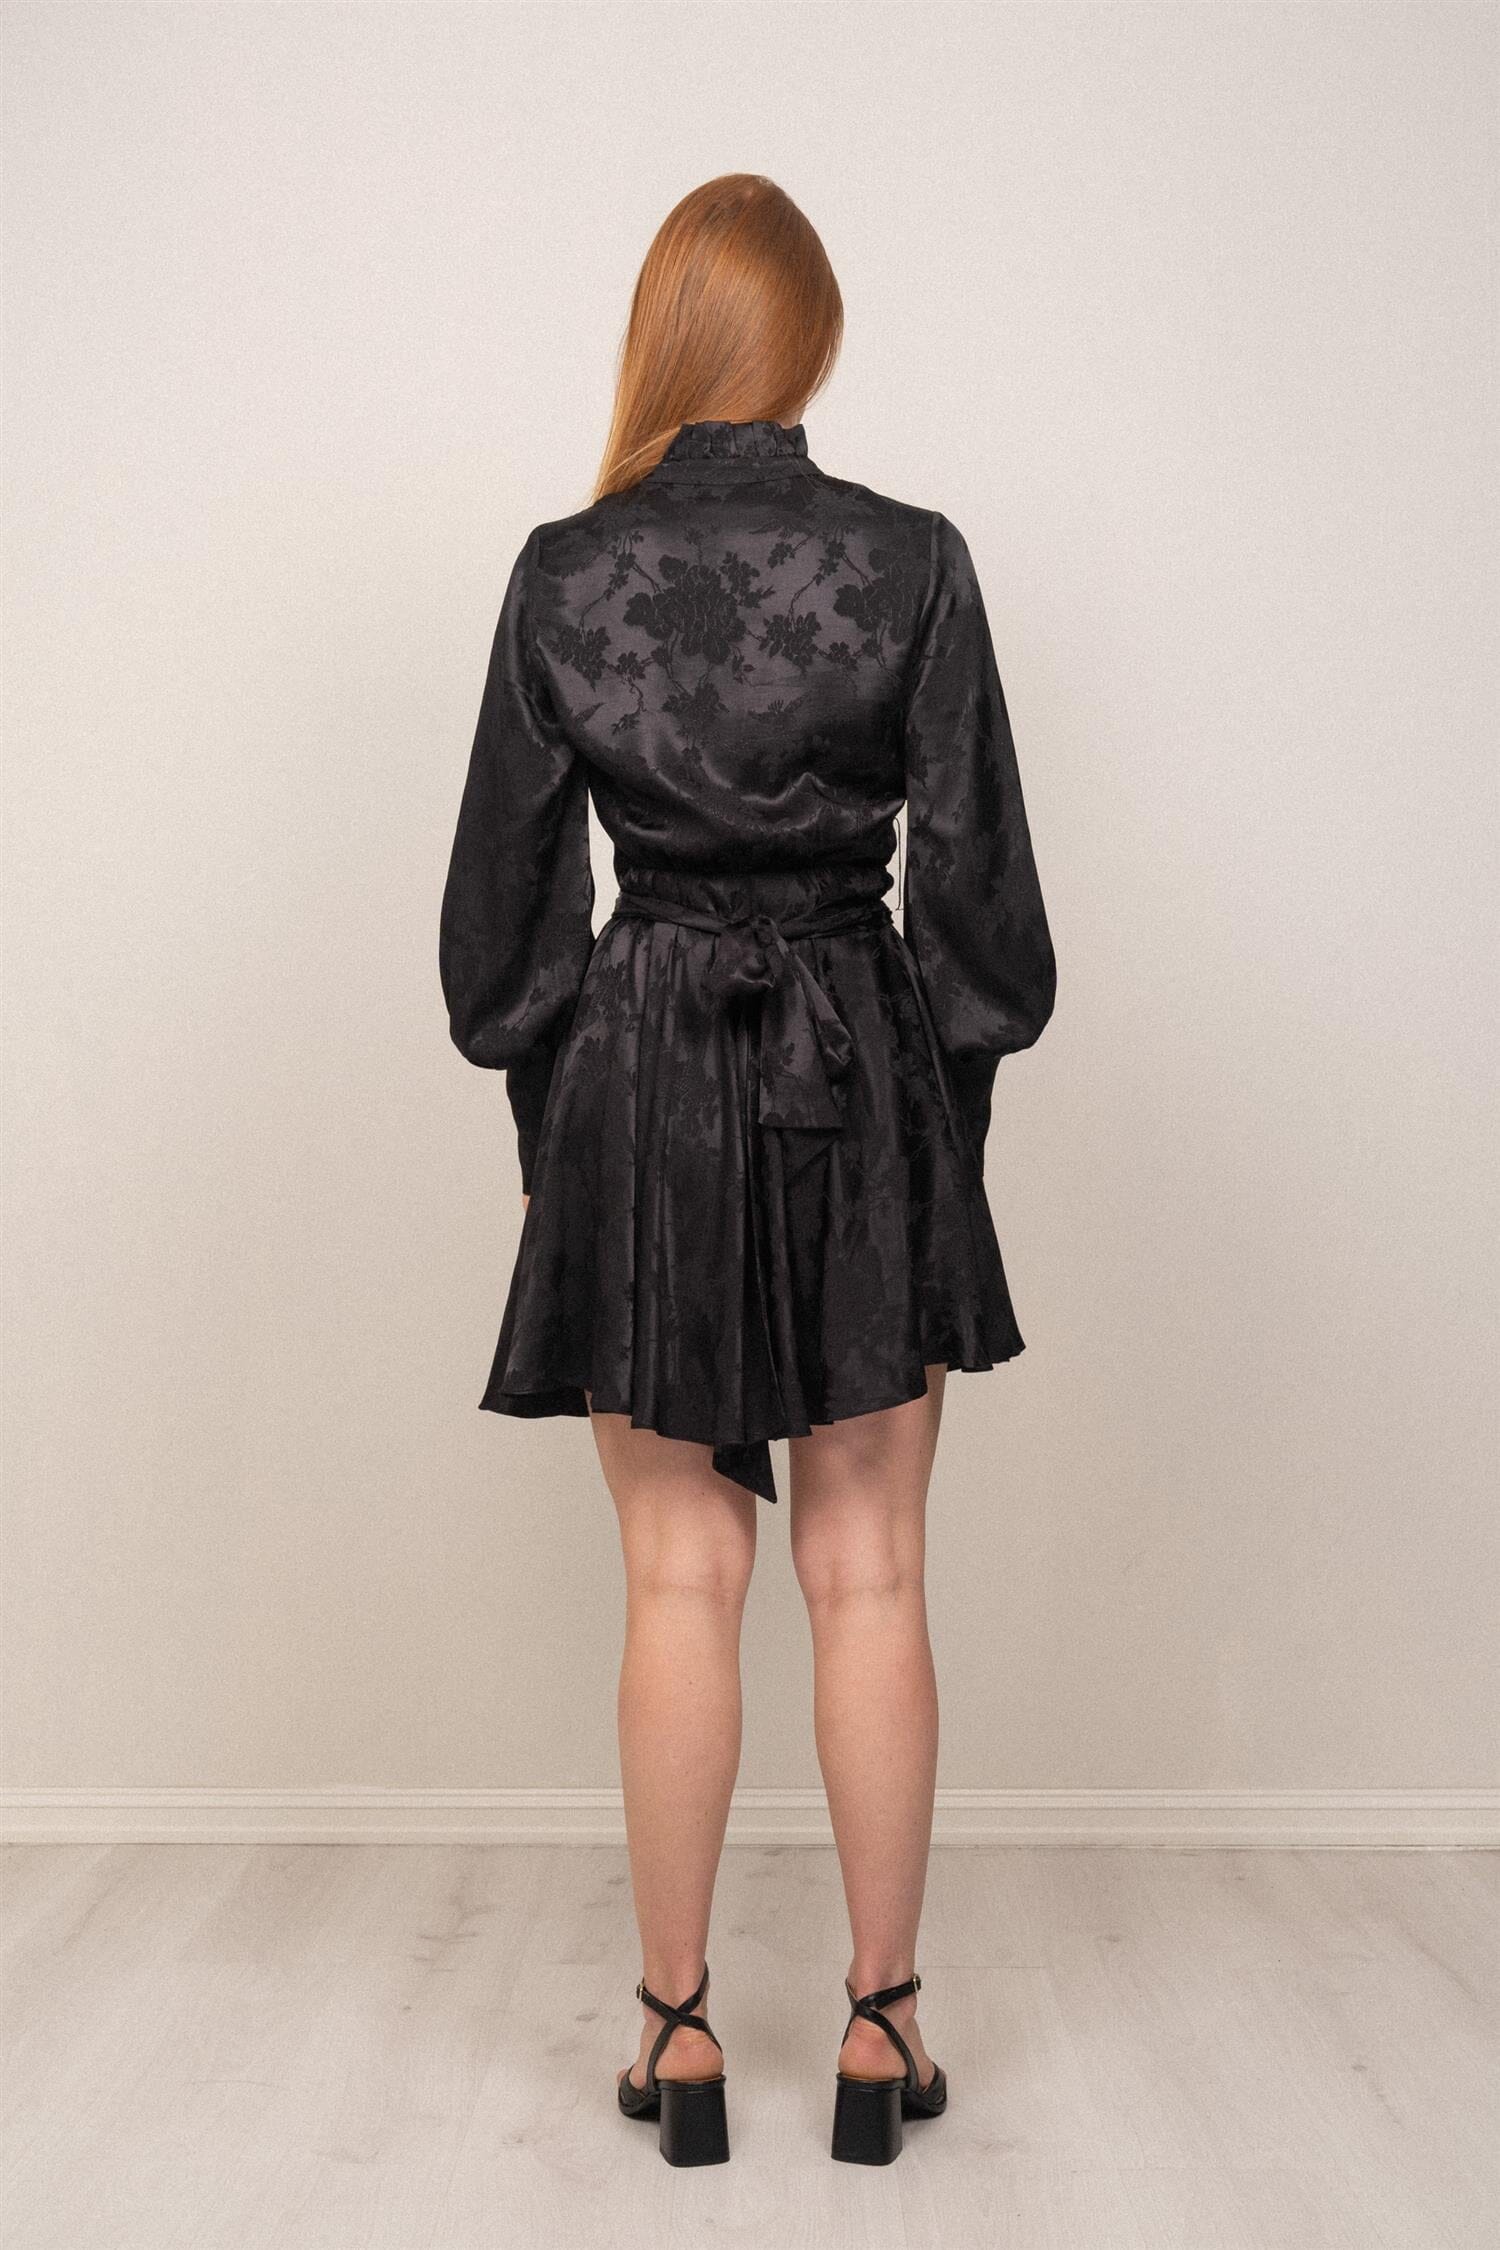 OSMINE af nor Saga Jacquard Dress Black Kjole